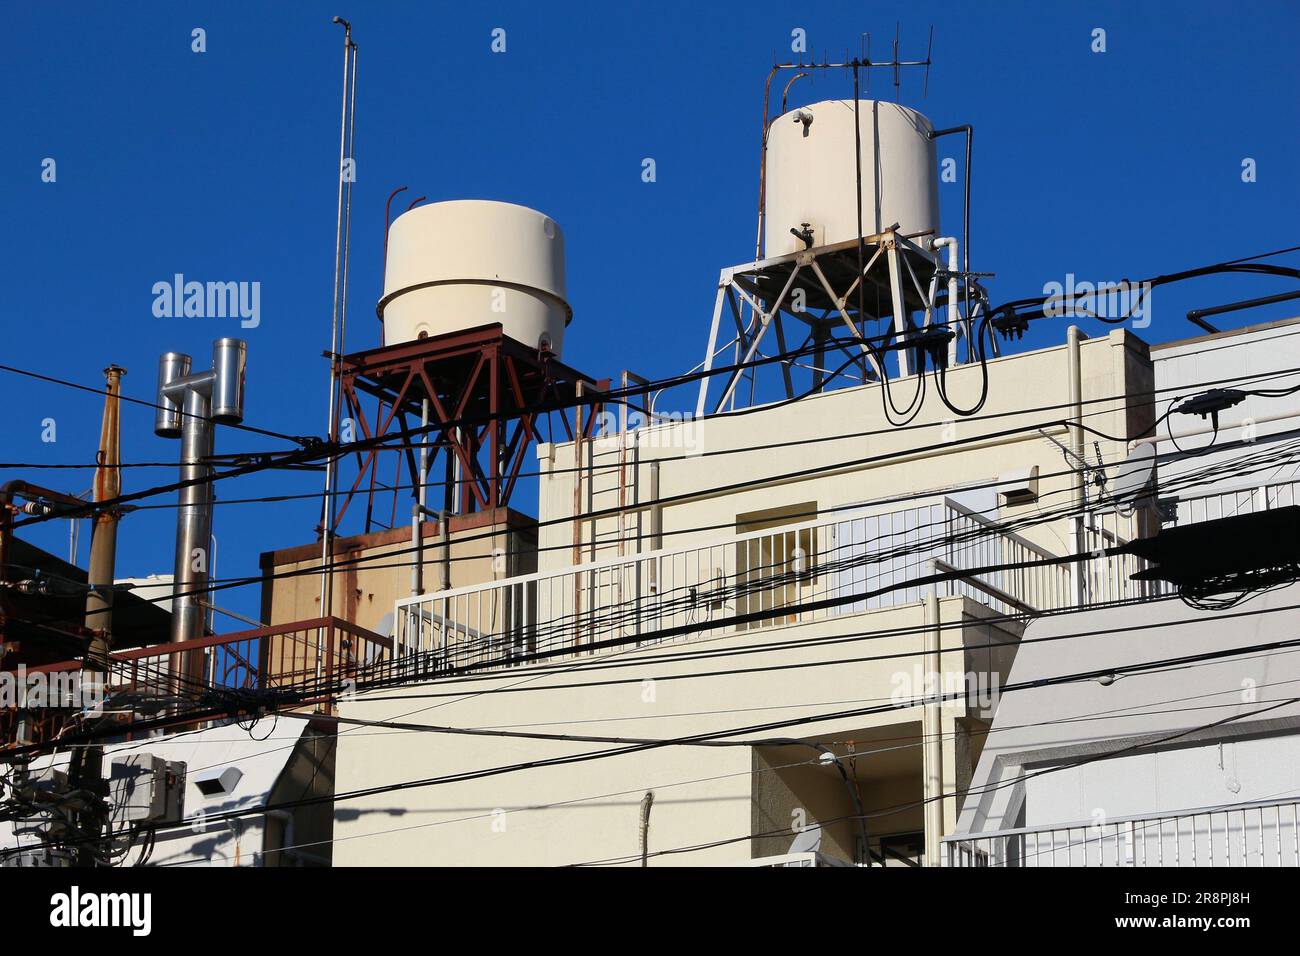 Wasserdruckbehälter auf dem Dach in Tokio, Japan. Versorgungsinfrastruktur in Japan. Stockfoto